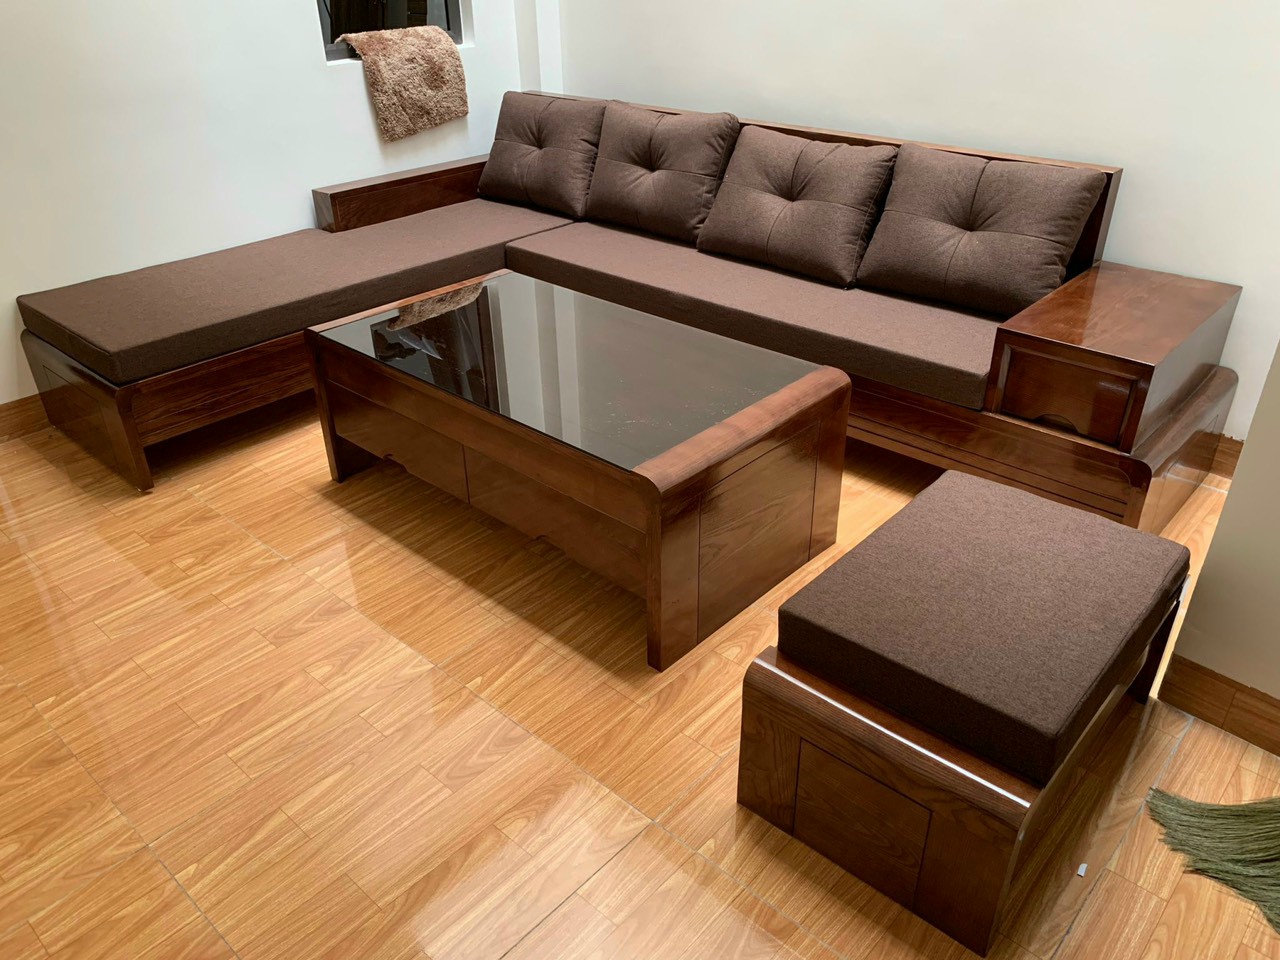 Sofa gỗ giá rẻ có tốt không?